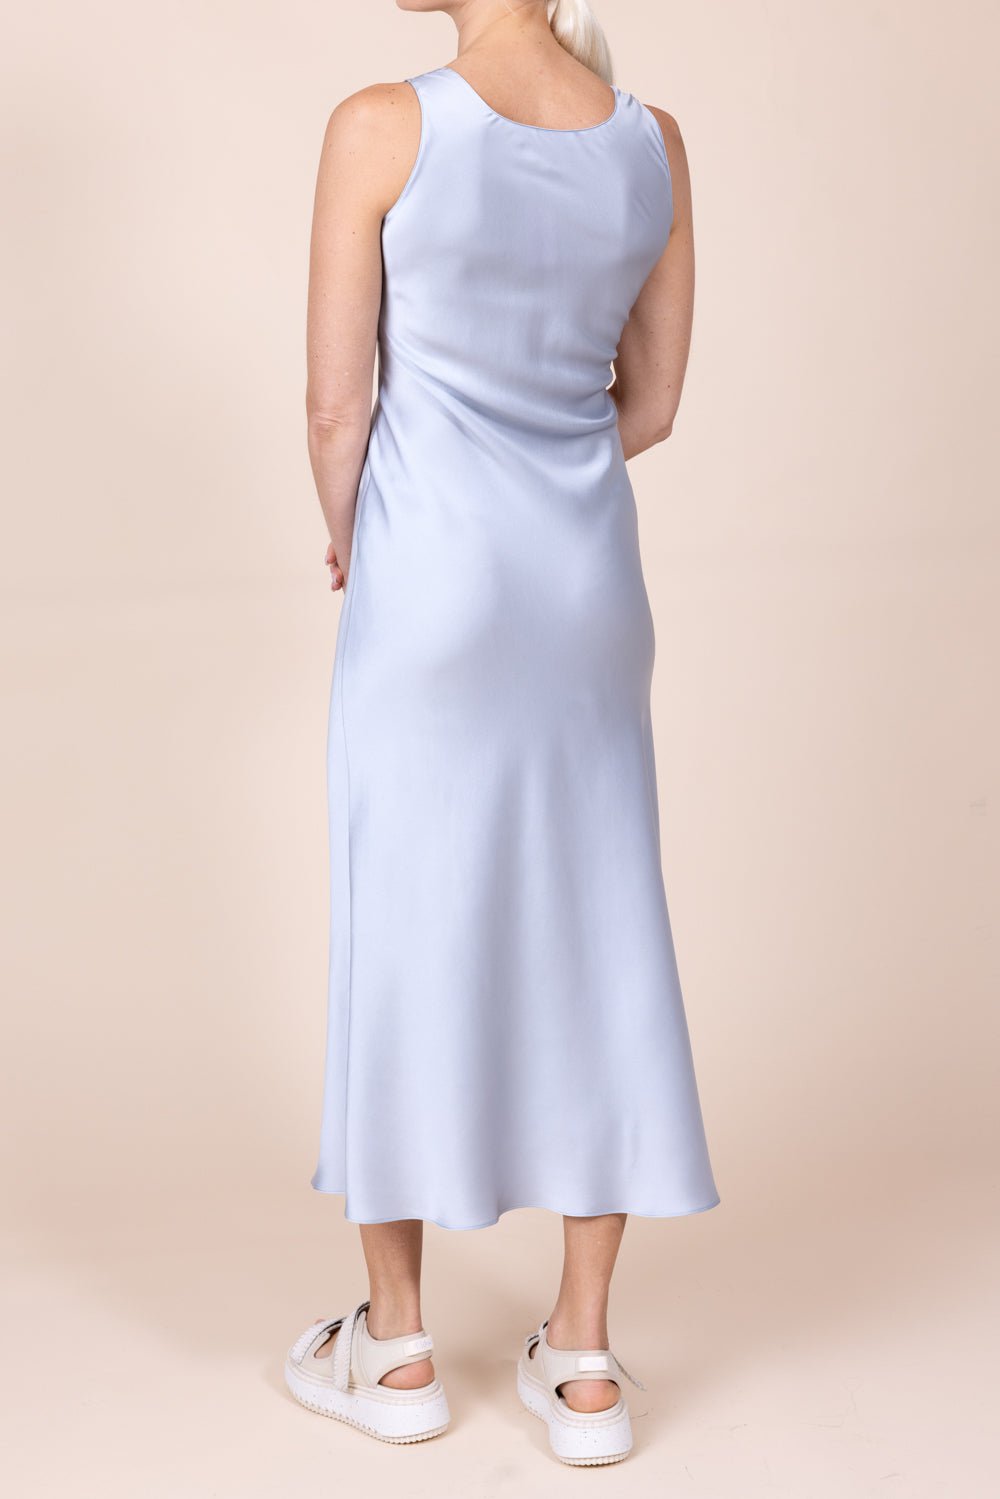 SABLYN-Mae Dress-